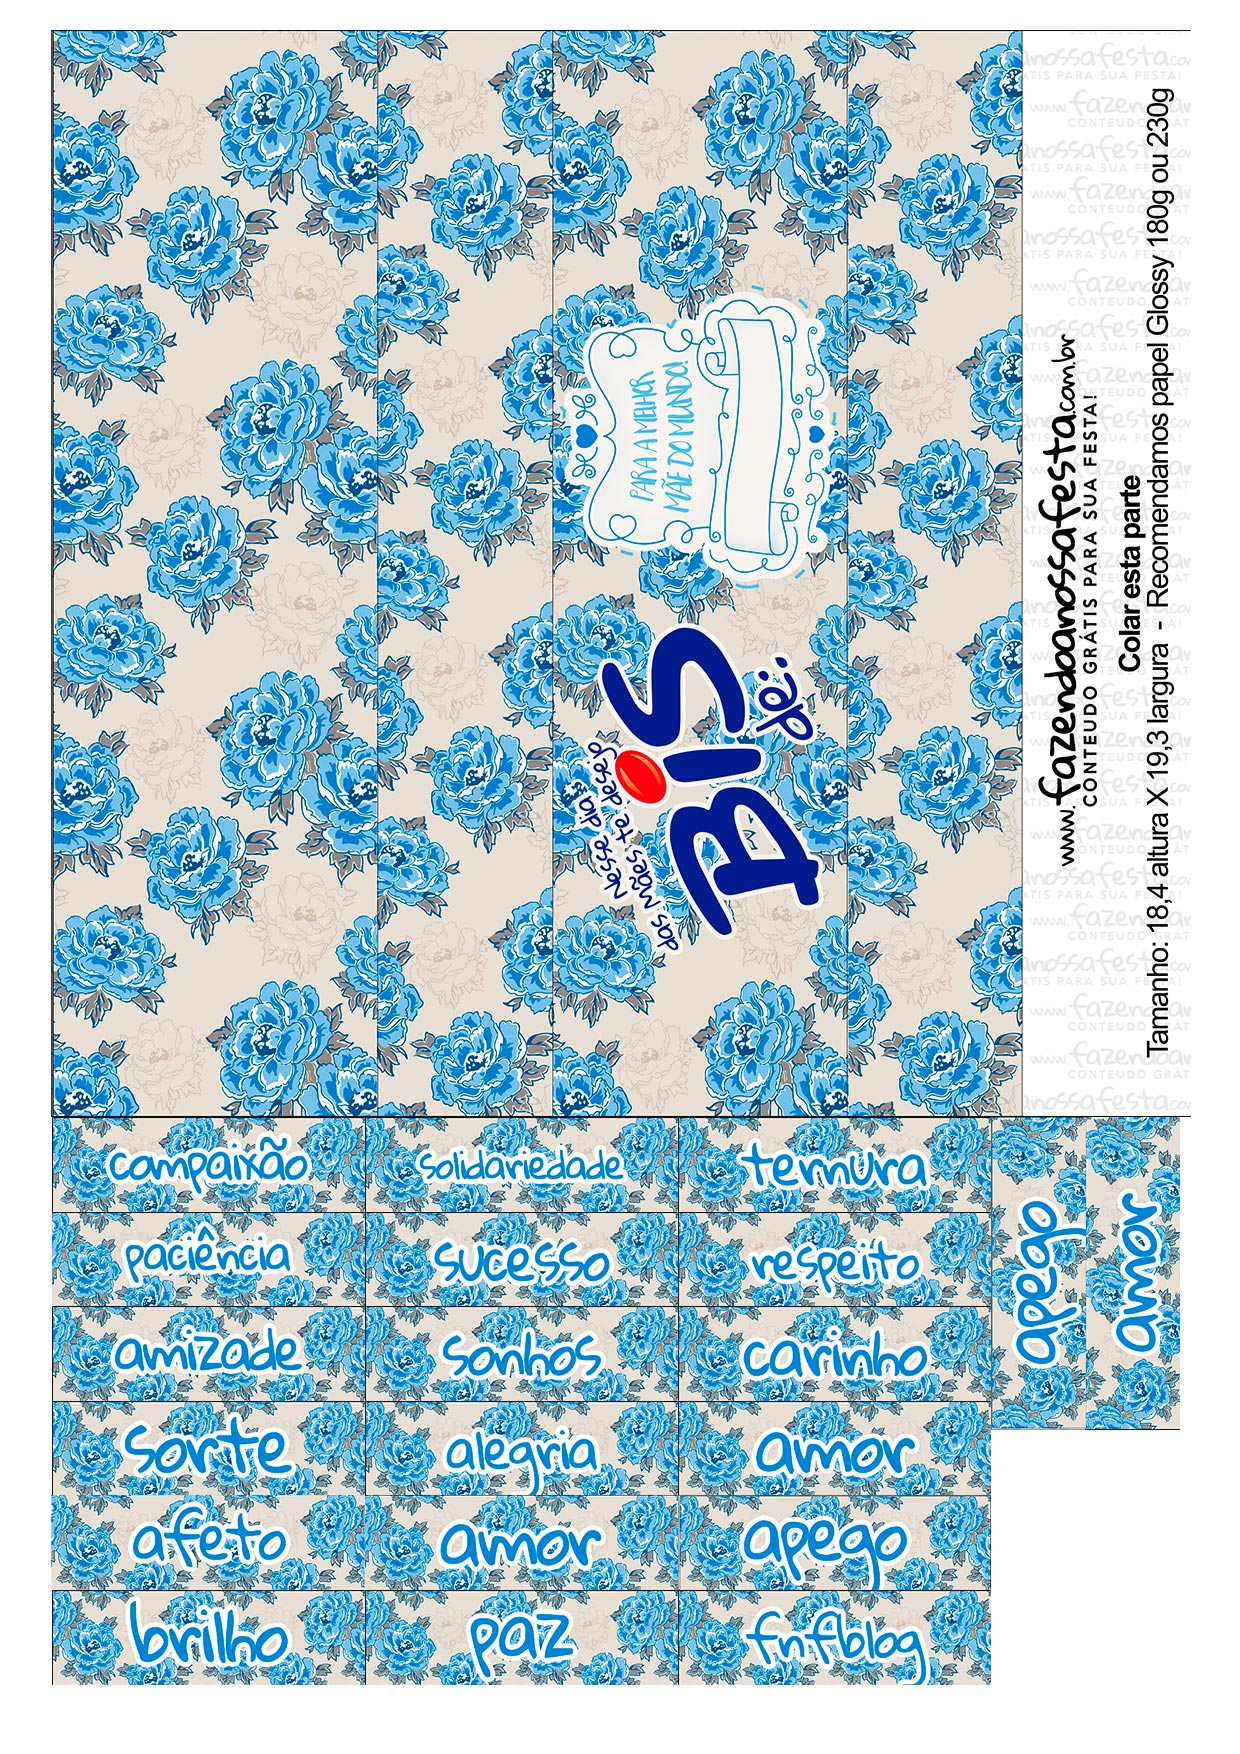 Folha A4 Pronta para Imprimir Caixa Bis Dia das Mães Floral Azul